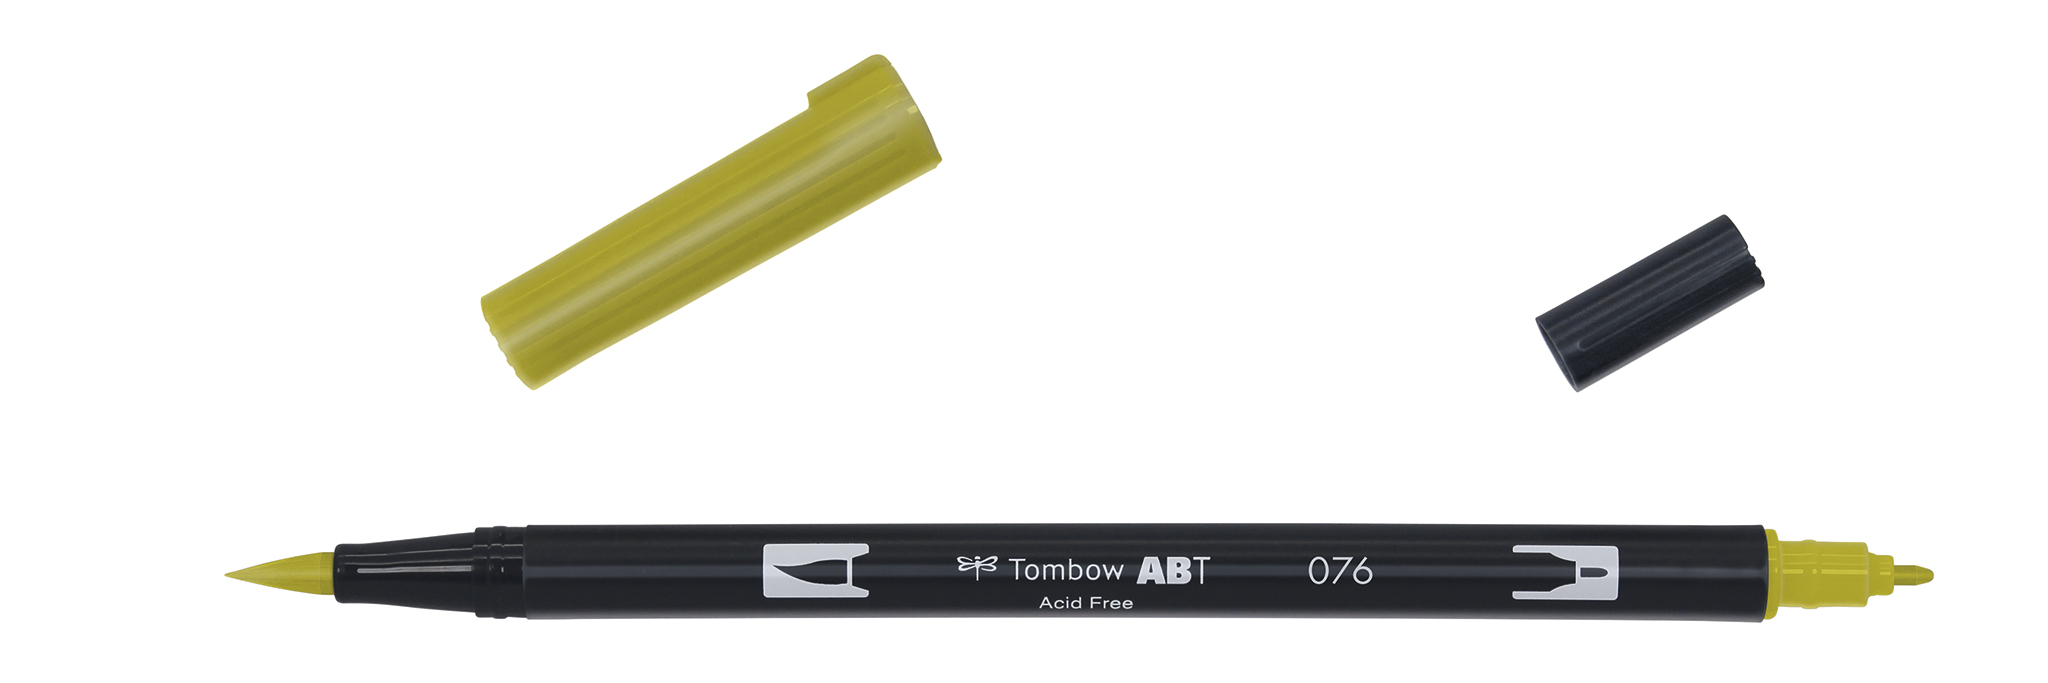 Tombow Art Brush Pen, green ochre